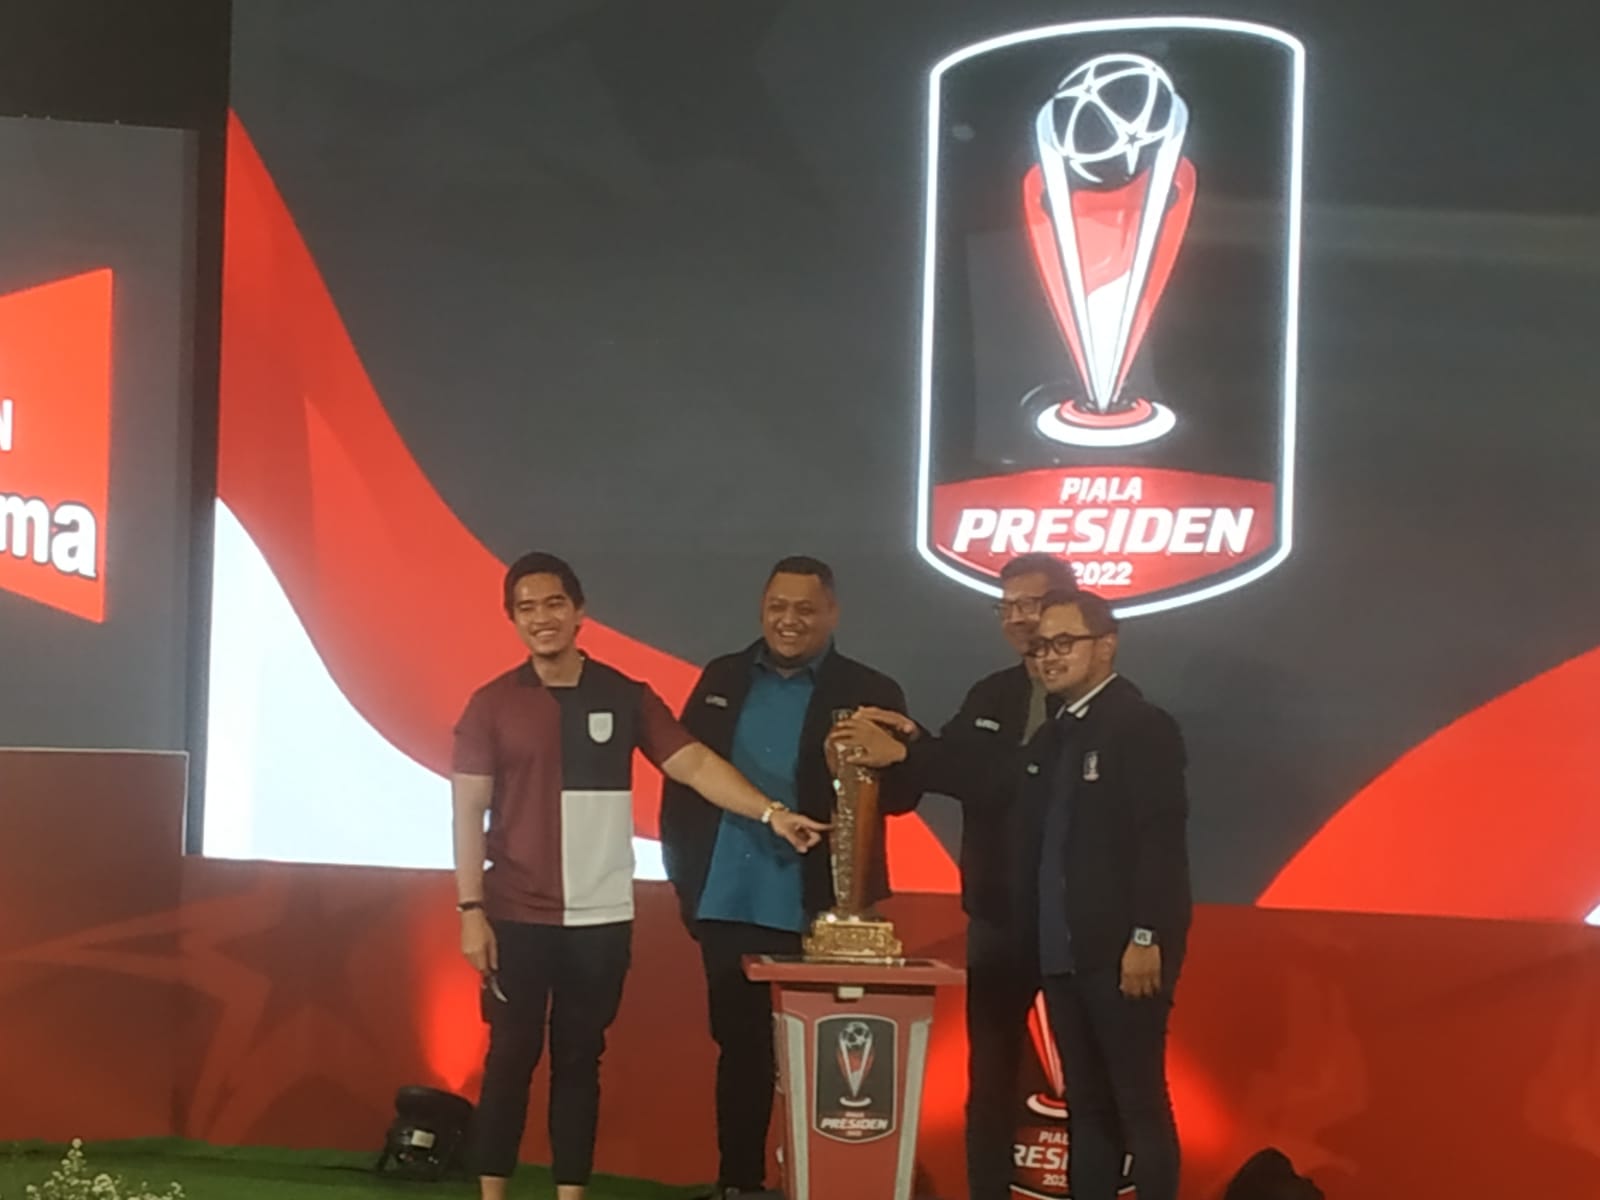 Sambut Piala Presiden 2022, Juragan 99 Bakal Renovasi Markas Arema FC